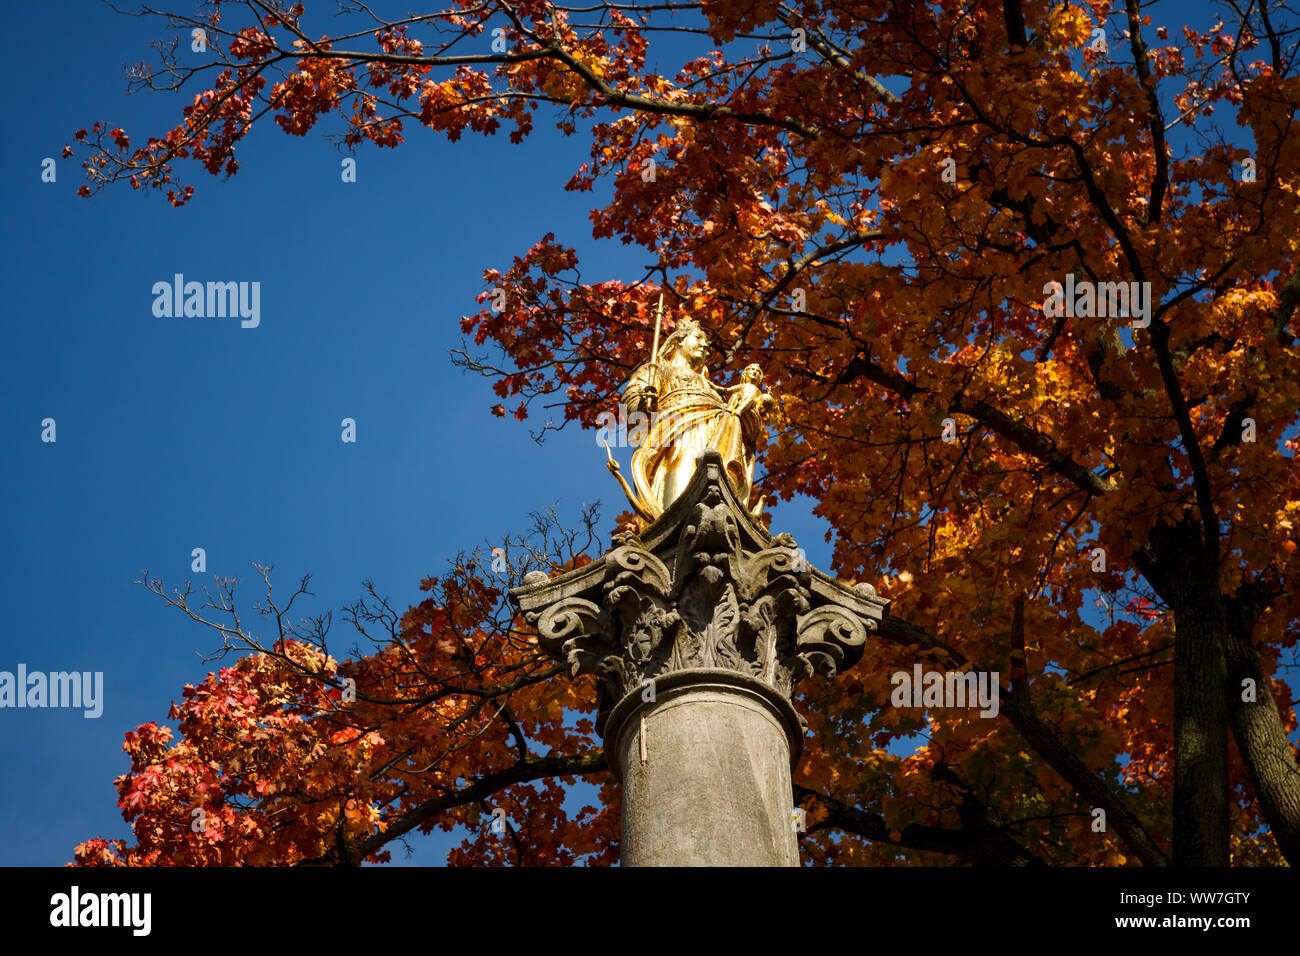 Une statue en or de la Vierge Marie sous ciel bleu à l'automne, low angle view Banque D'Images